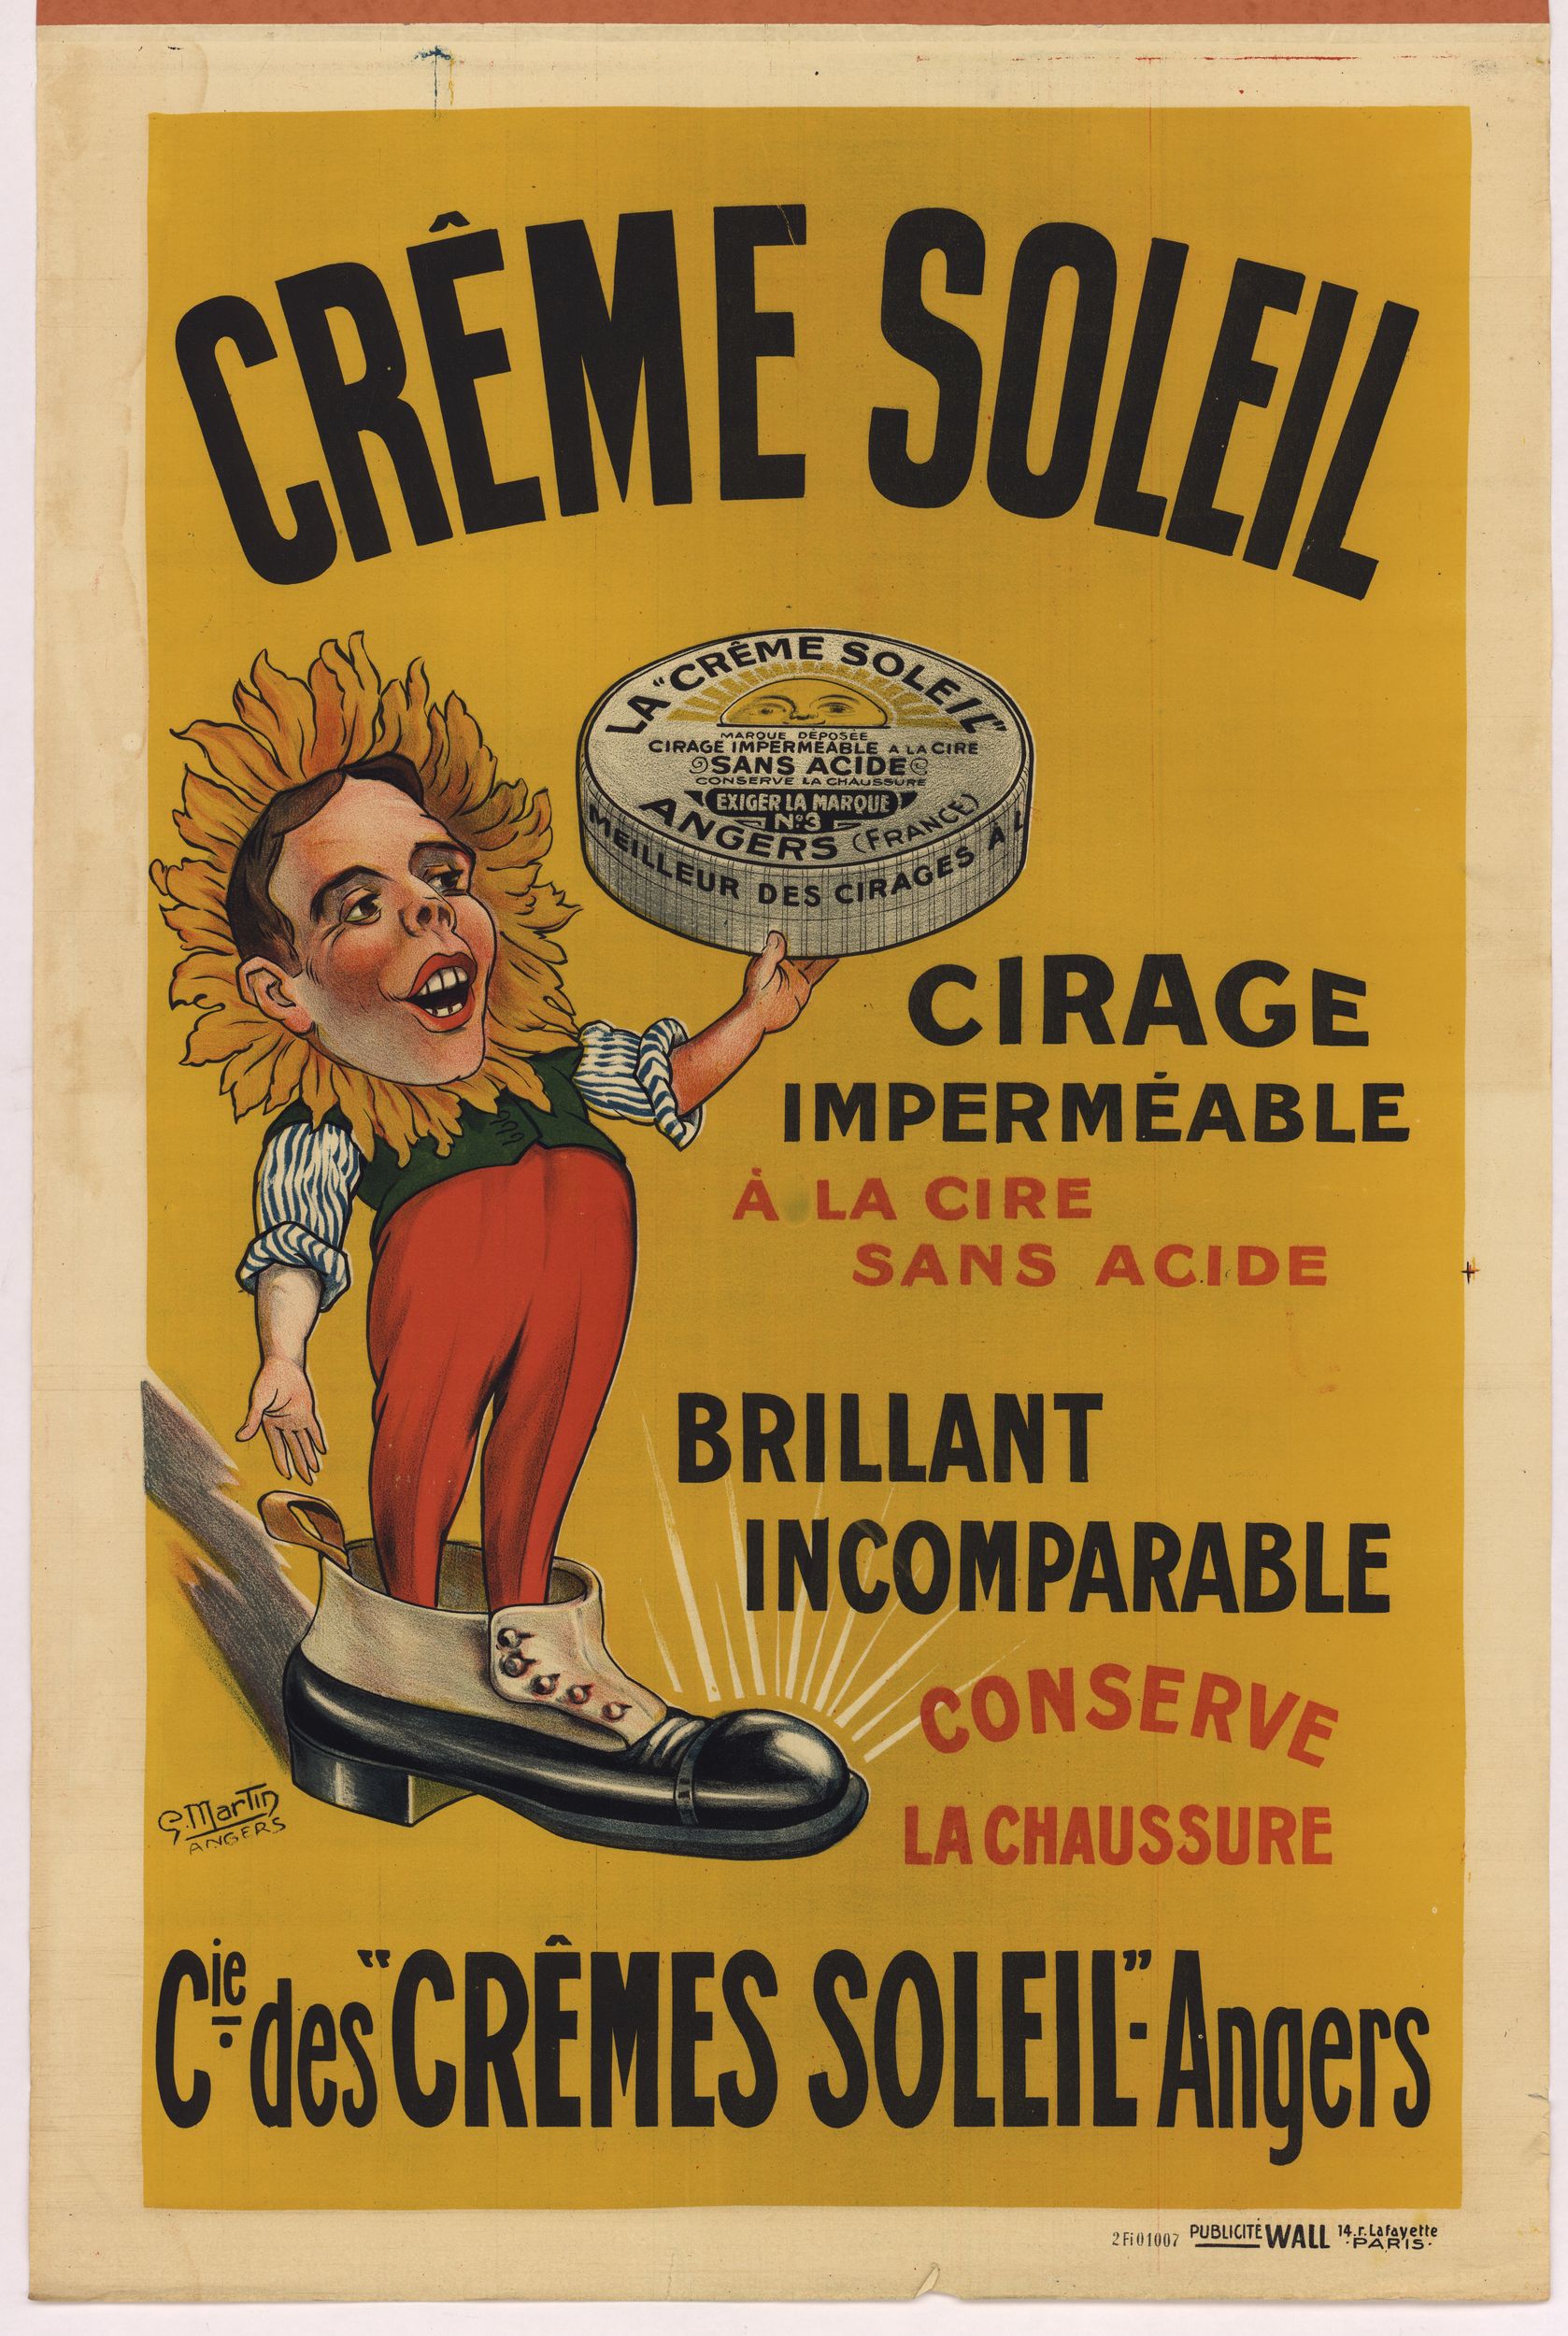 Crème soleil, cirage imperméable à la cire : affiche publicitaire couleur (1900, cote : 2FI/1007)